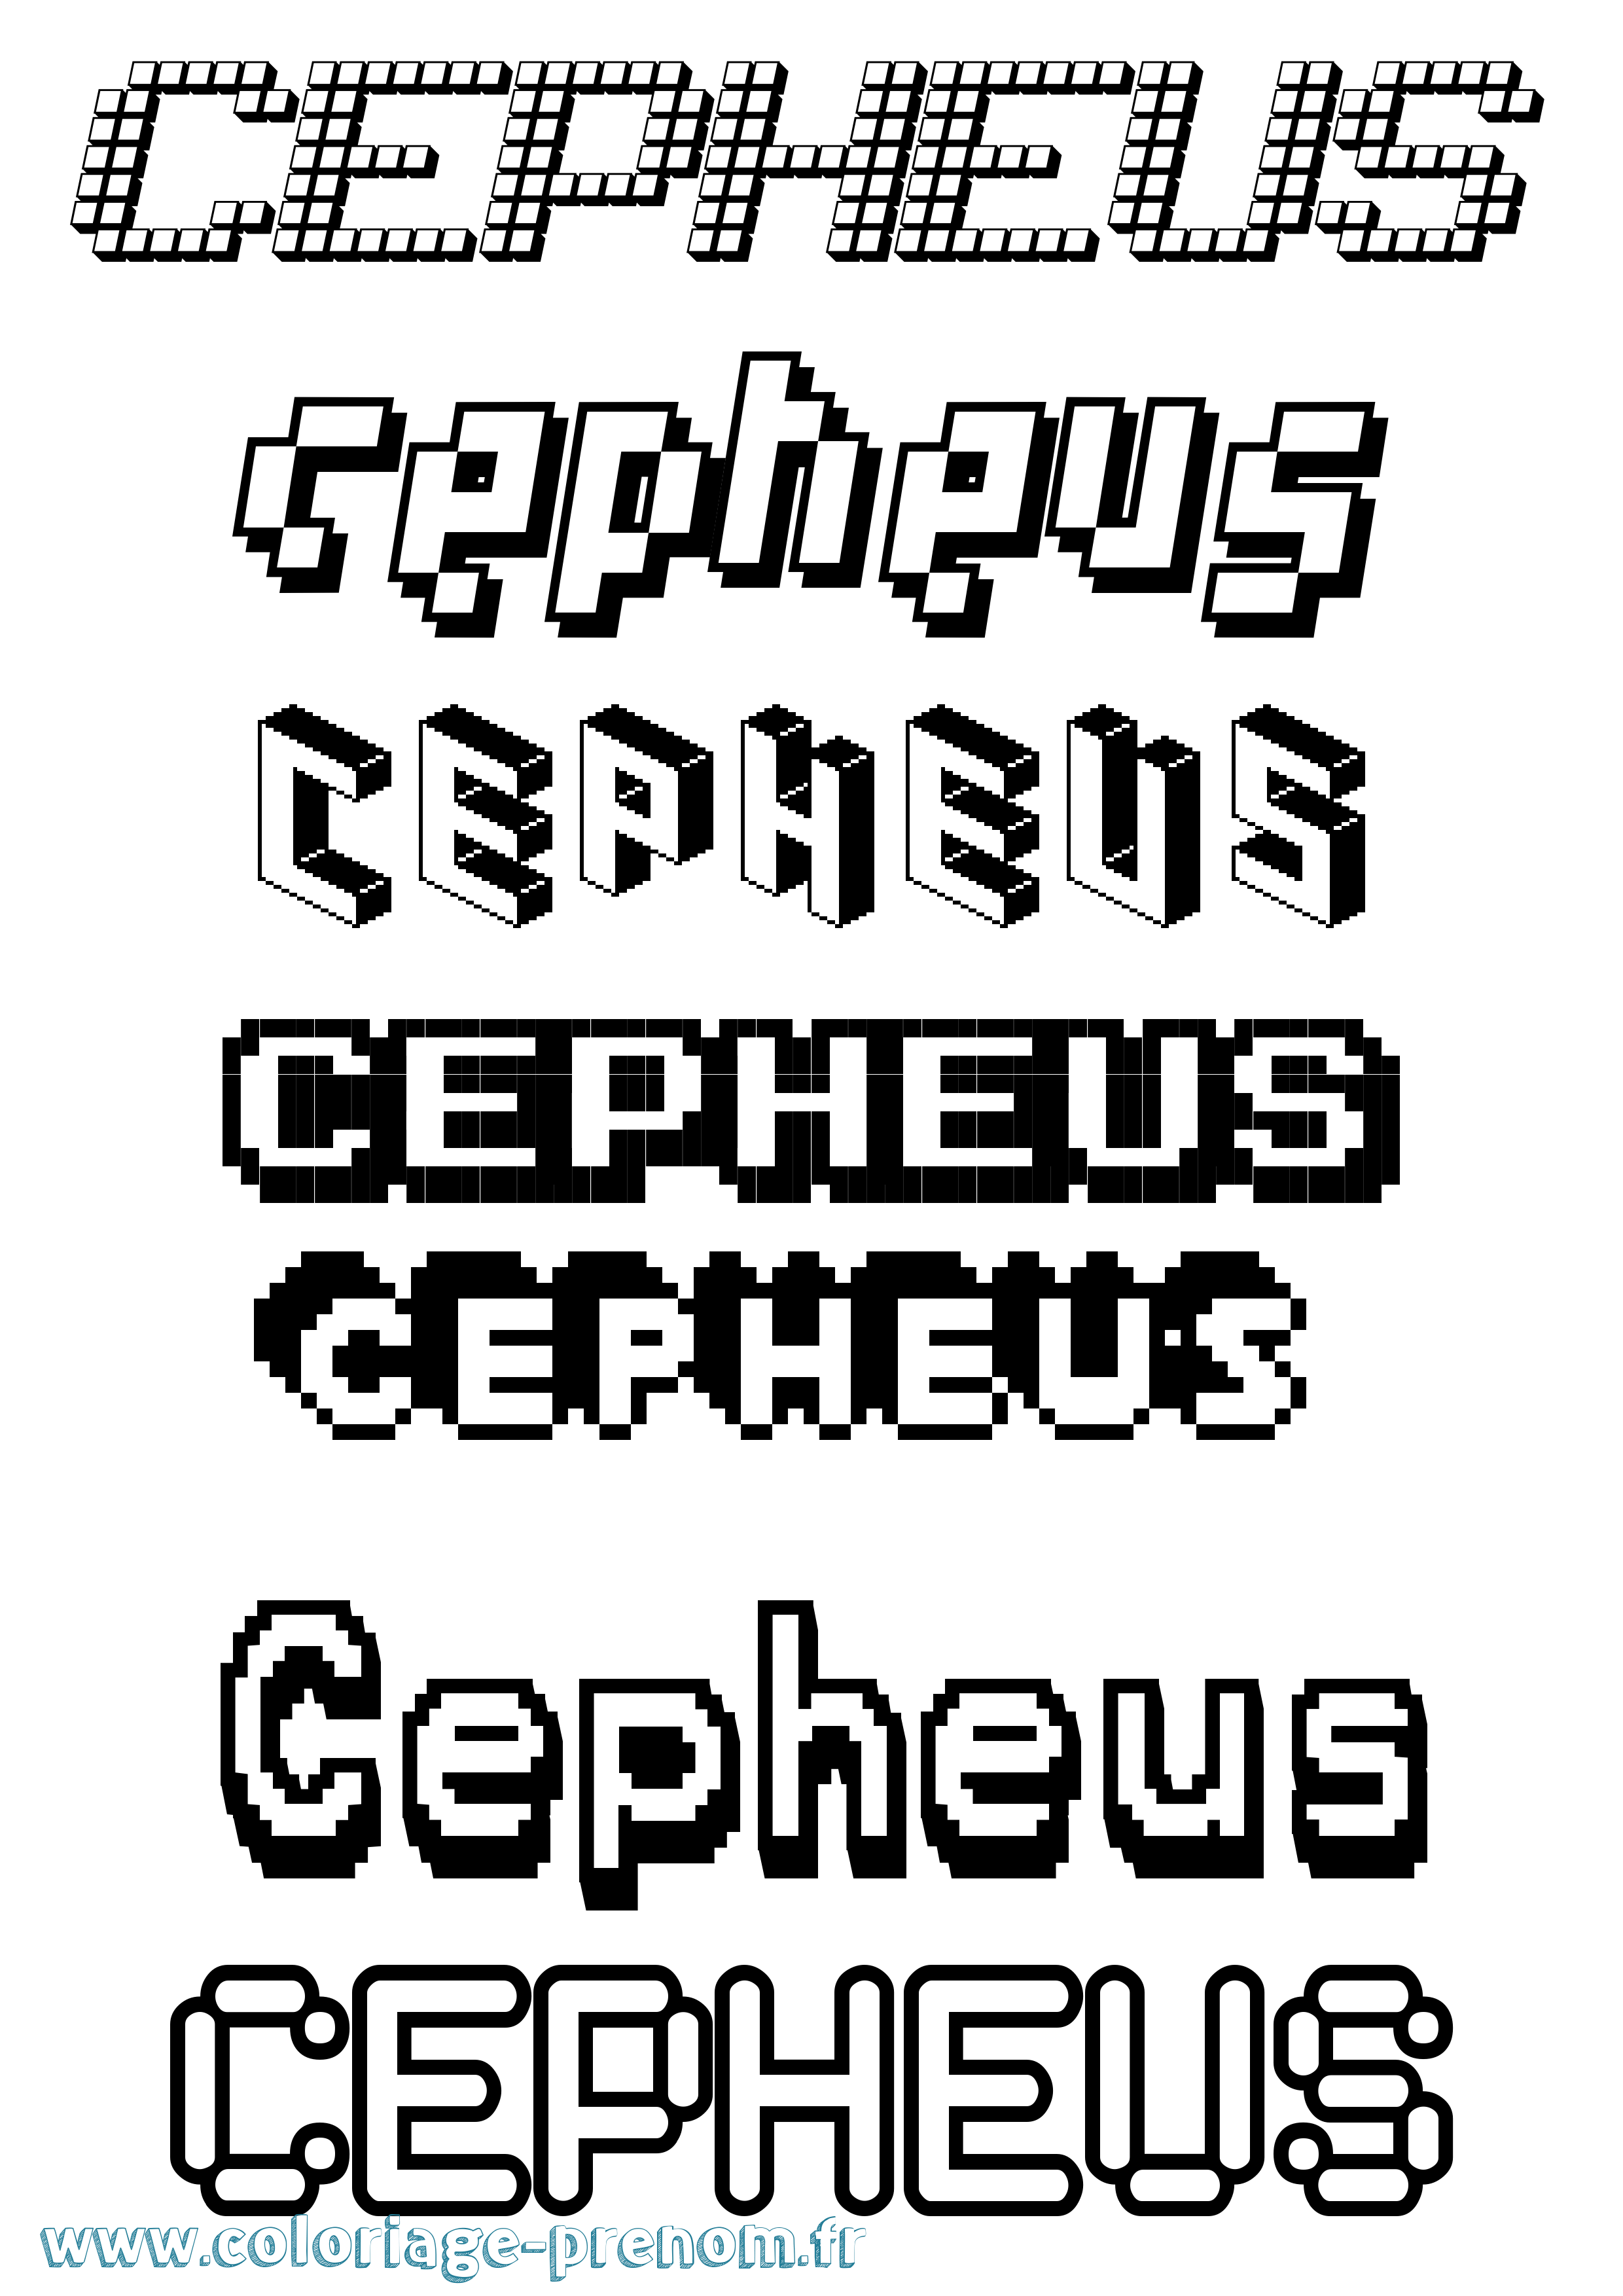 Coloriage prénom Cepheus Pixel